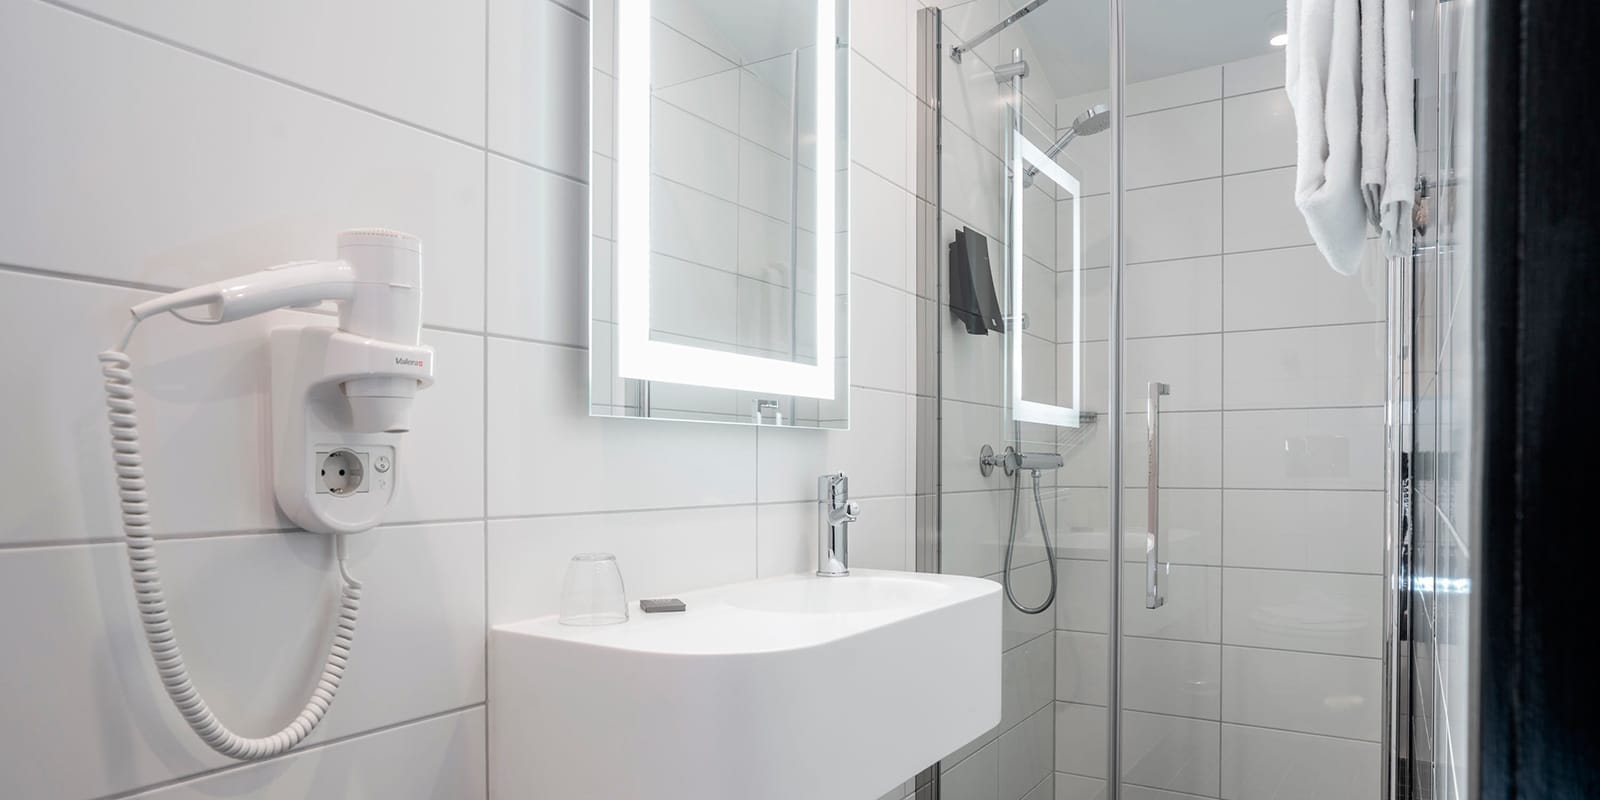 Handfat och dusch i badrum i standardrum på Thon Hotel Astoria i centrala Oslo